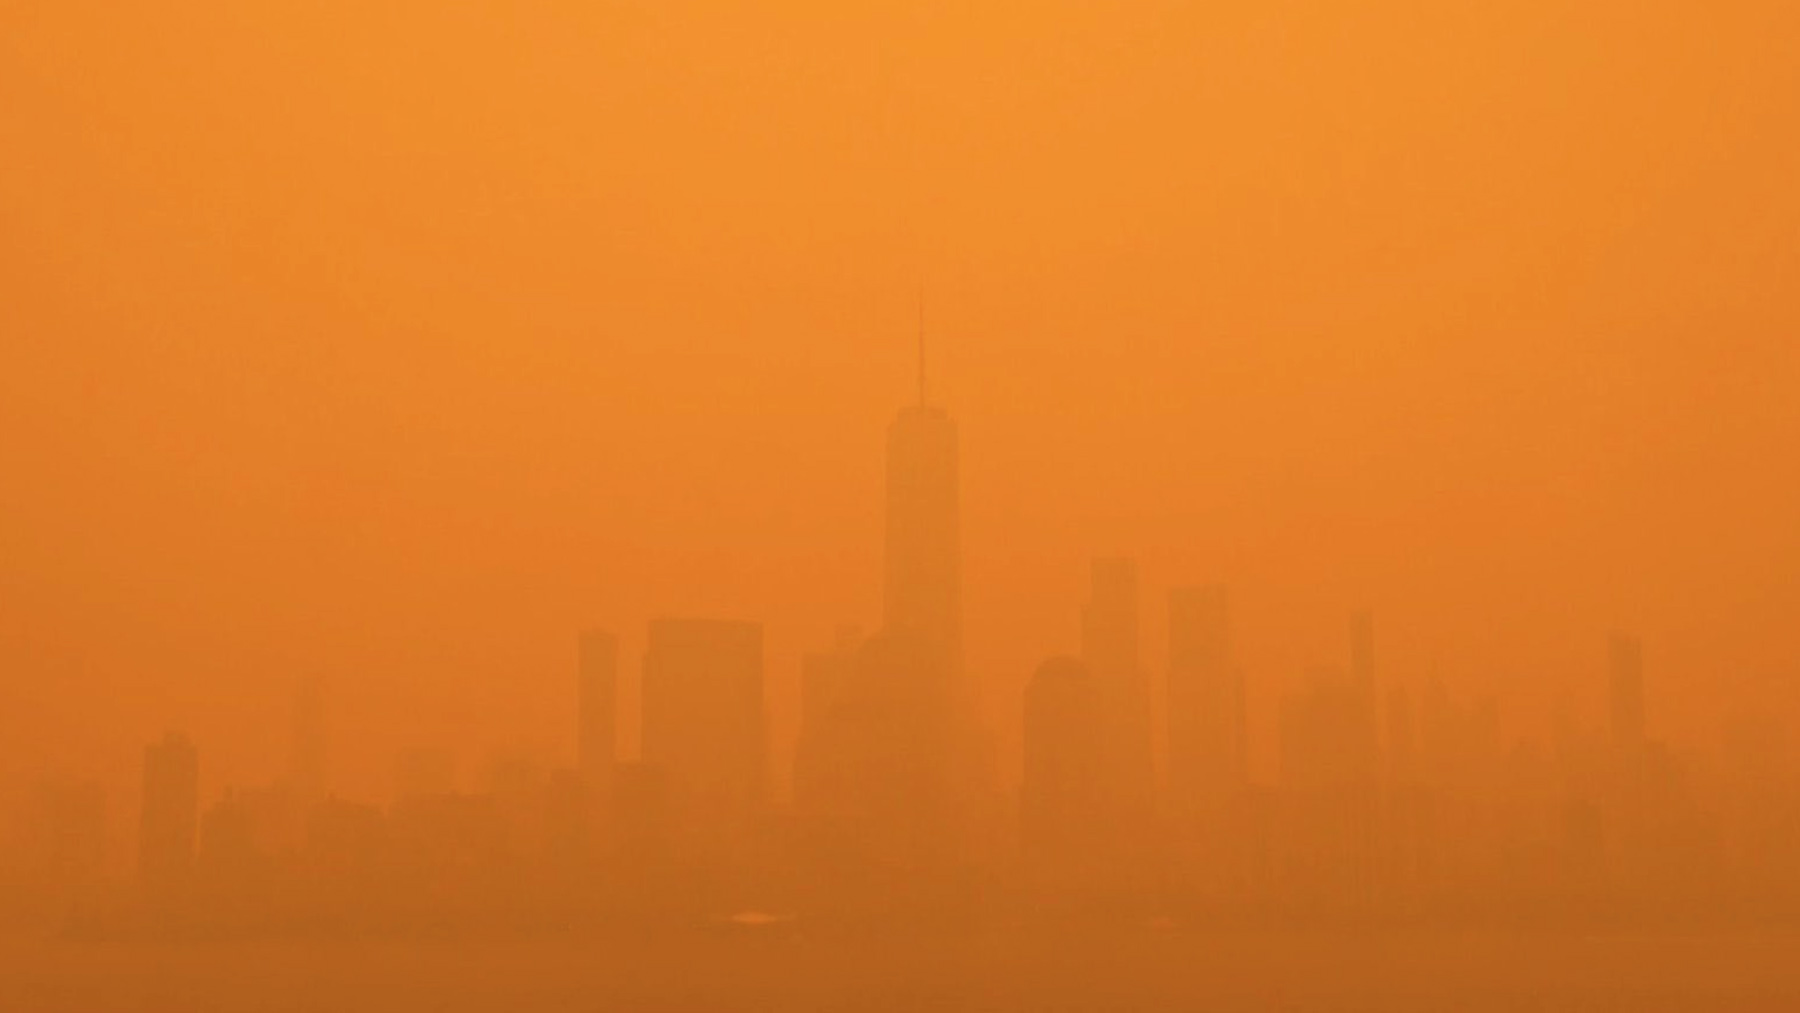 Nueva York cubierto por un manto de niebla naranja.